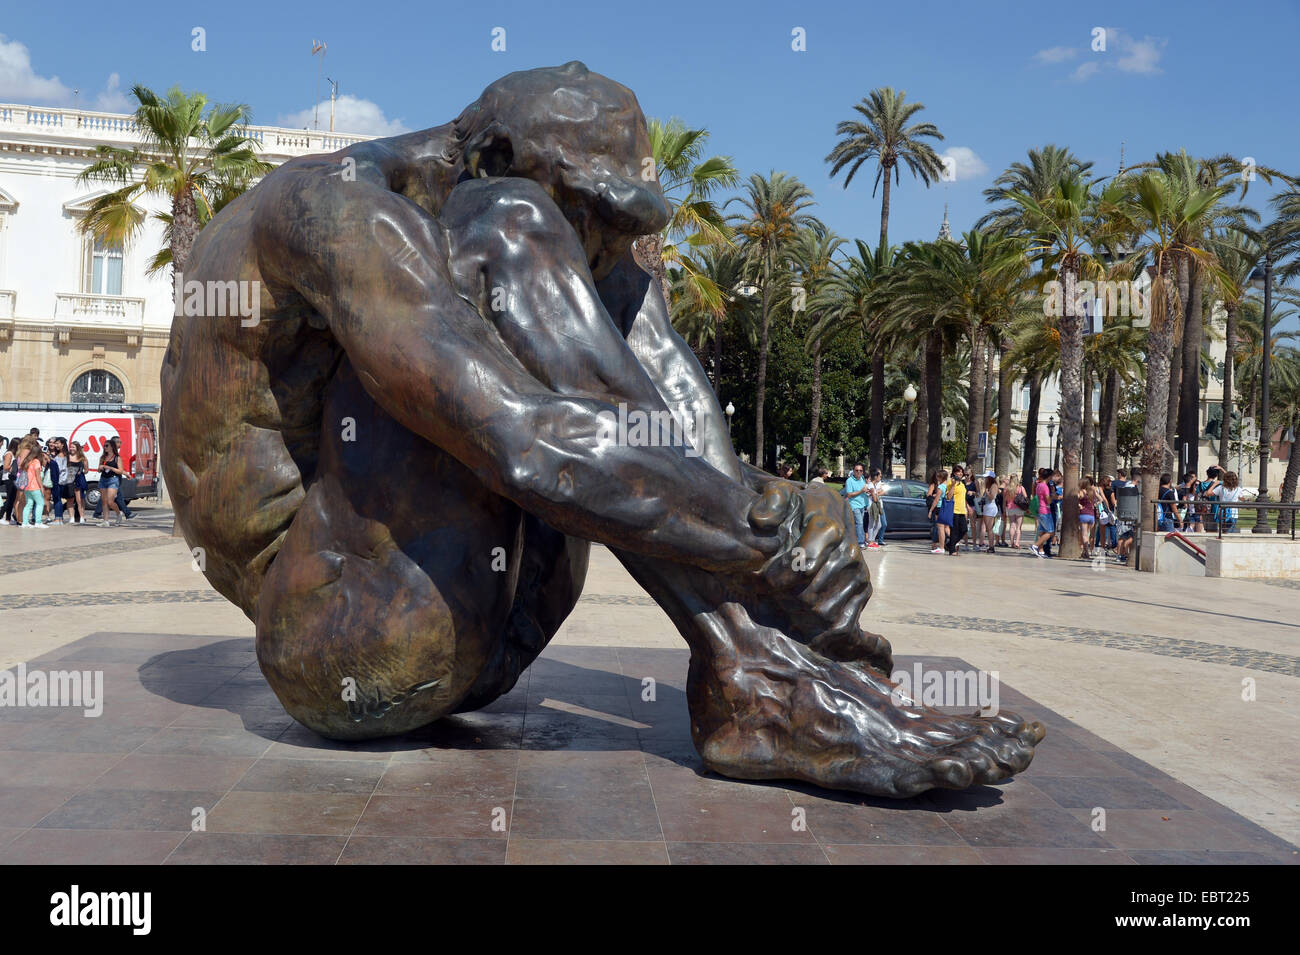 La statue de bronze pour les victimes de l'terrorizim à carthagène espagne Banque D'Images